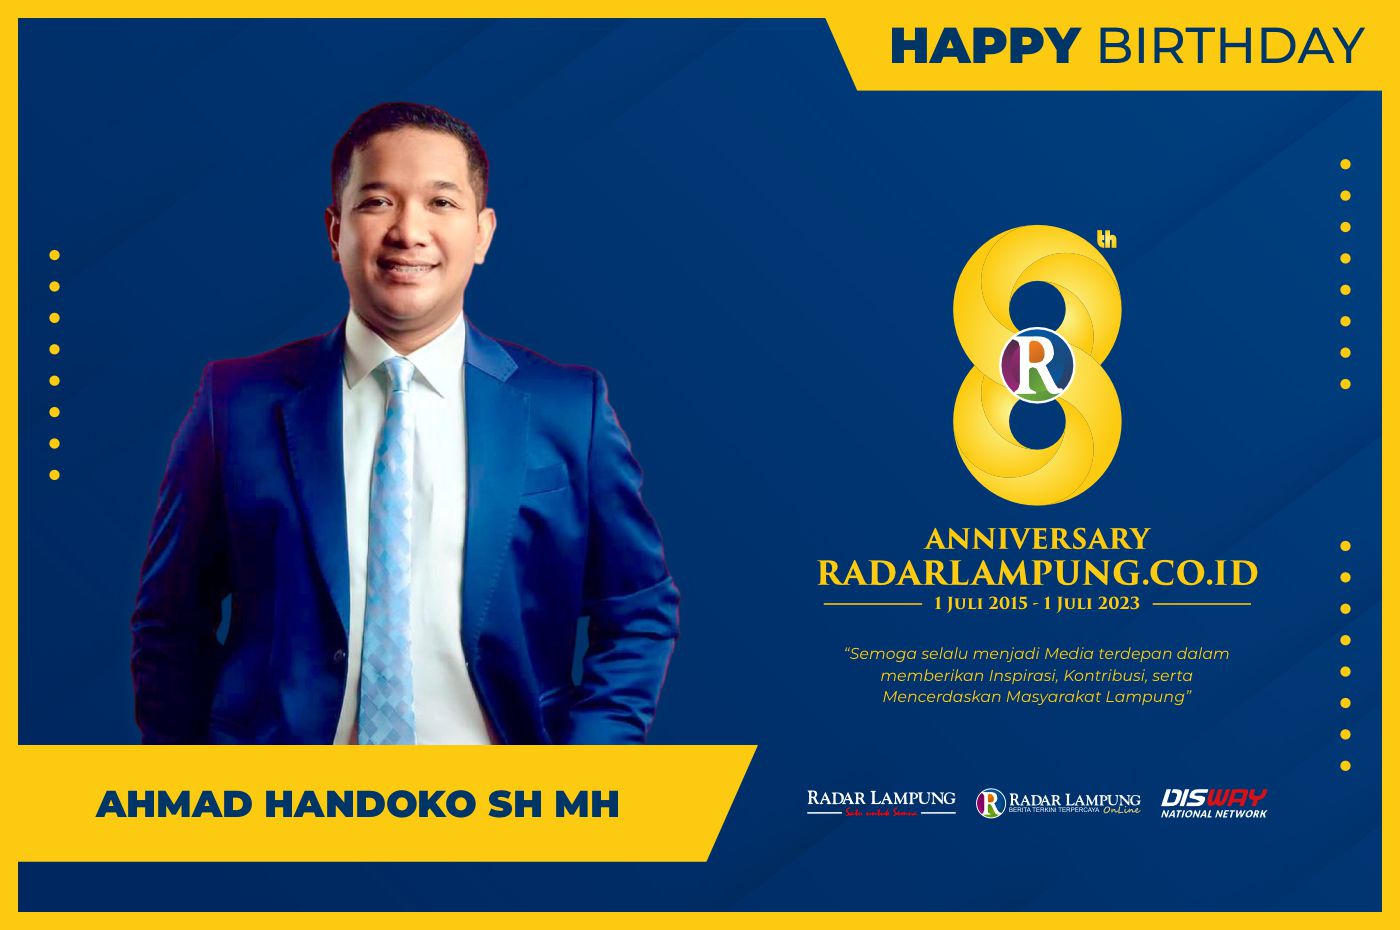 Ahmad Handoko: Happy Anniversary Radar Lampung Online ke-8